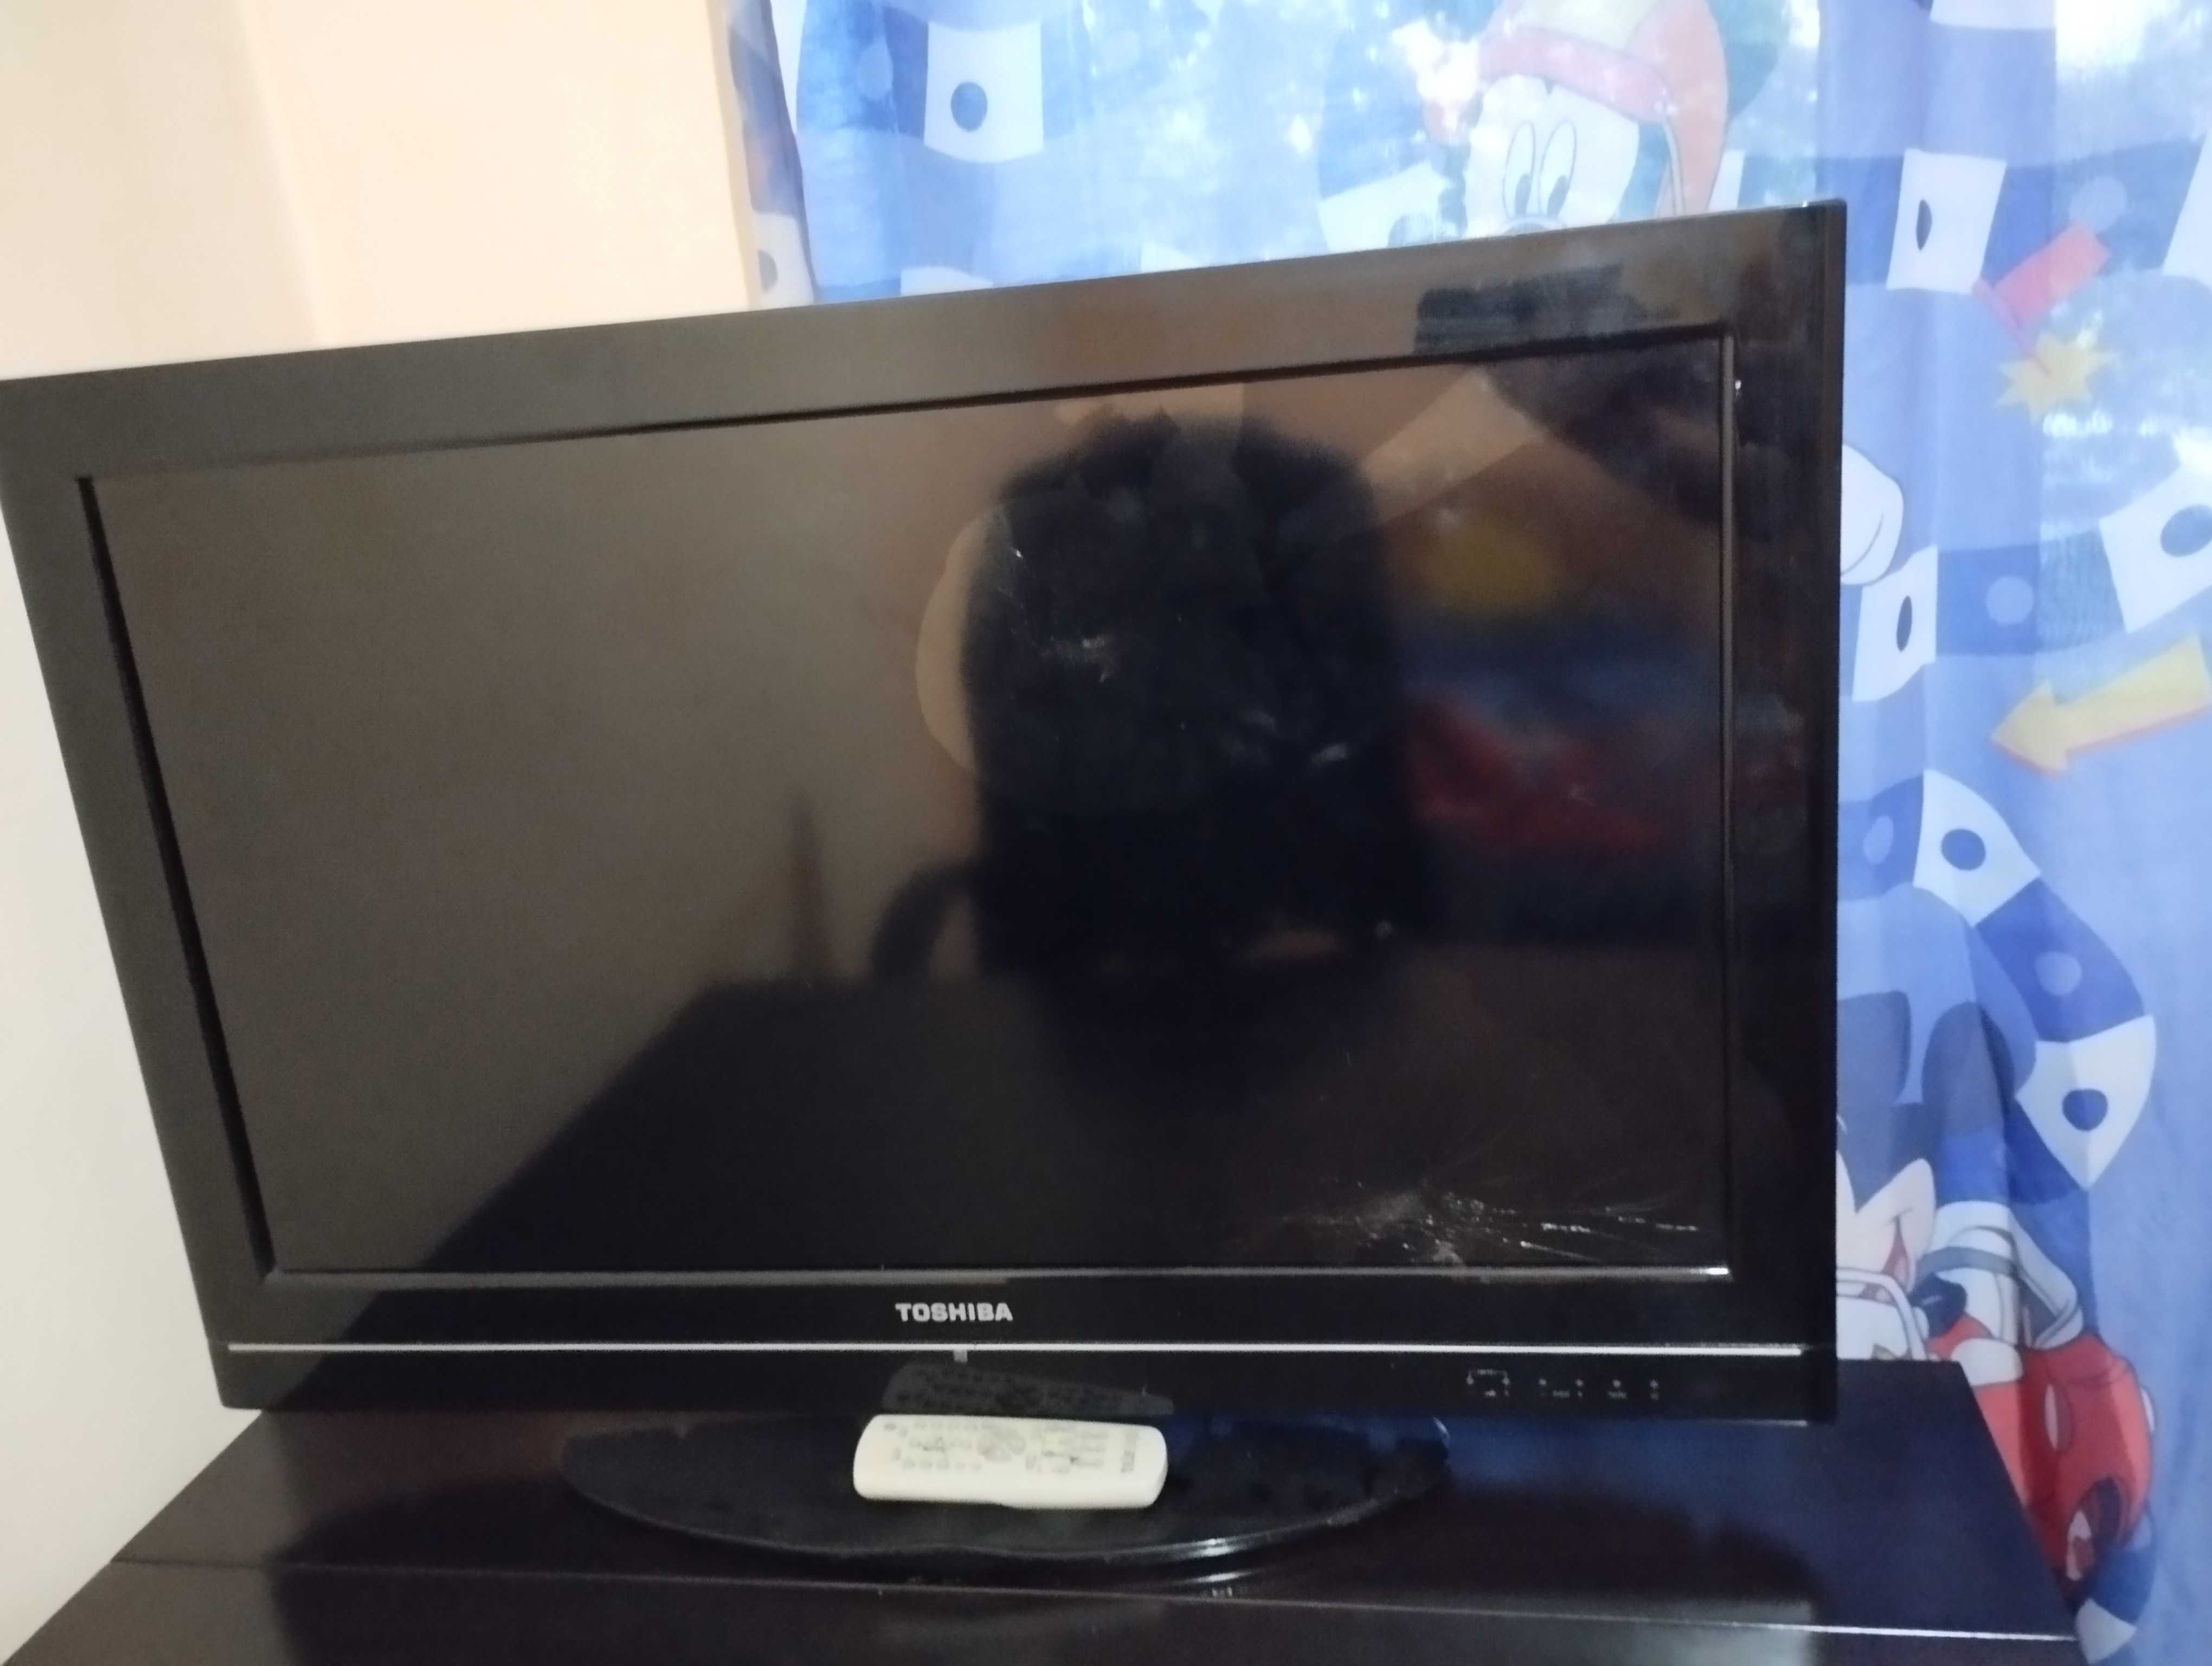 Vând TV Toshiba cu displayul spart,se vede doar jumate de ecran